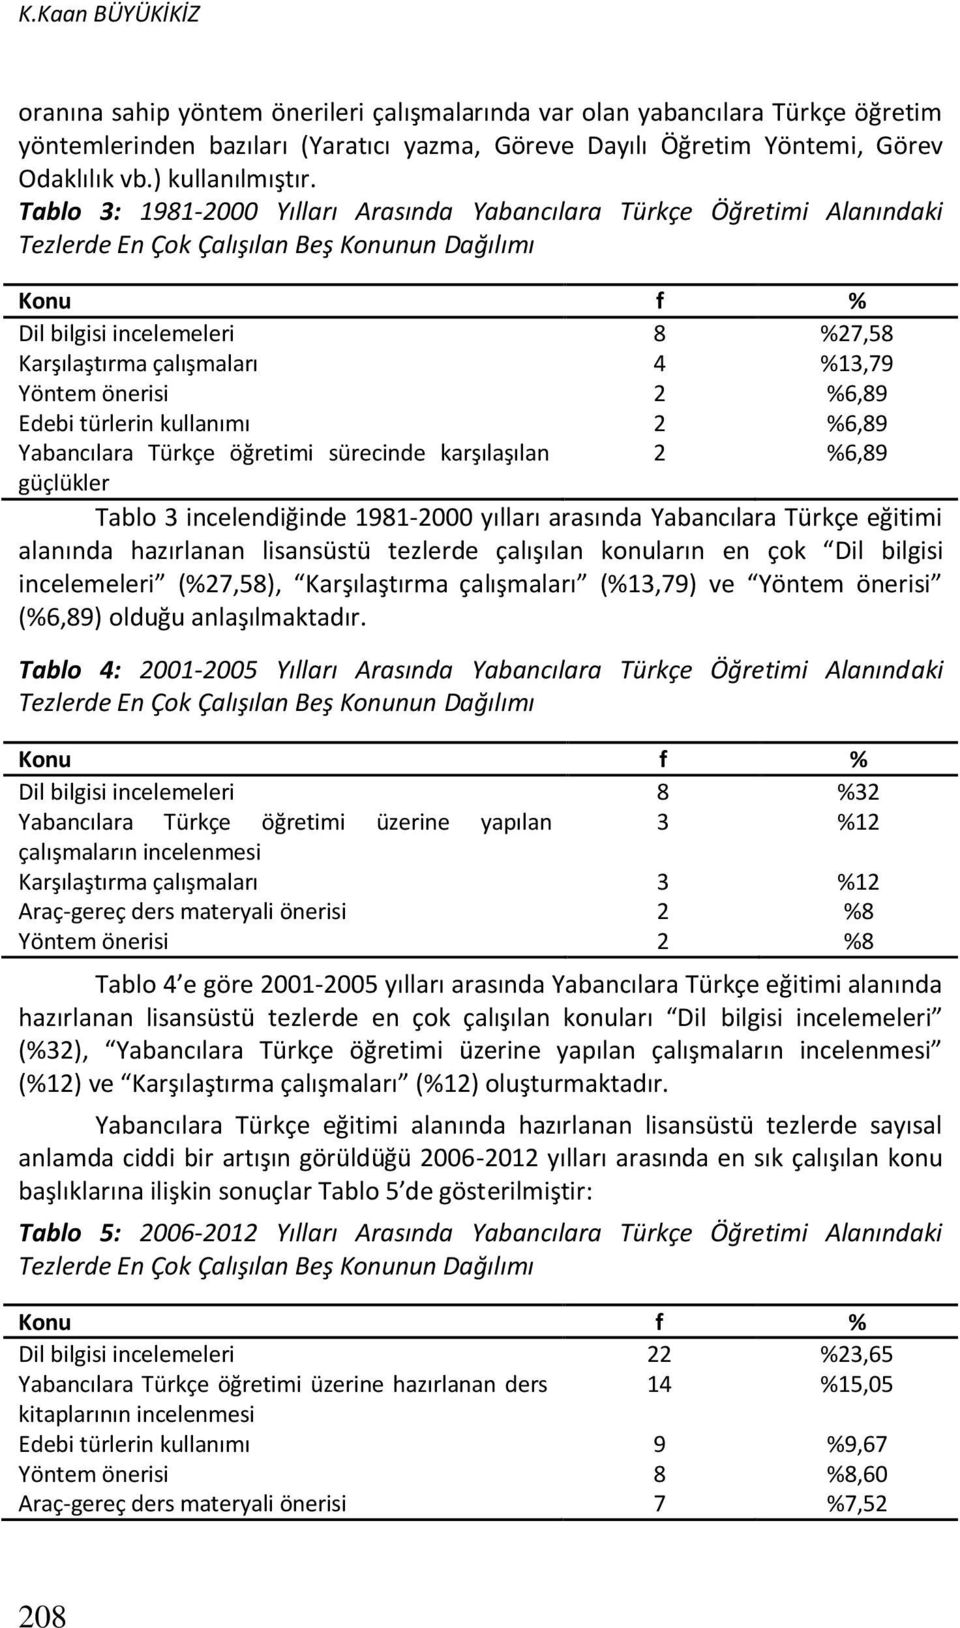 Tablo 3: 1981-2000 Yılları Arasında Yabancılara Türkçe Öğretimi Alanındaki Tezlerde En Çok Çalışılan Beş Konunun Dağılımı Konu f % Dil bilgisi incelemeleri 8 %27,58 Karşılaştırma çalışmaları 4 %13,79